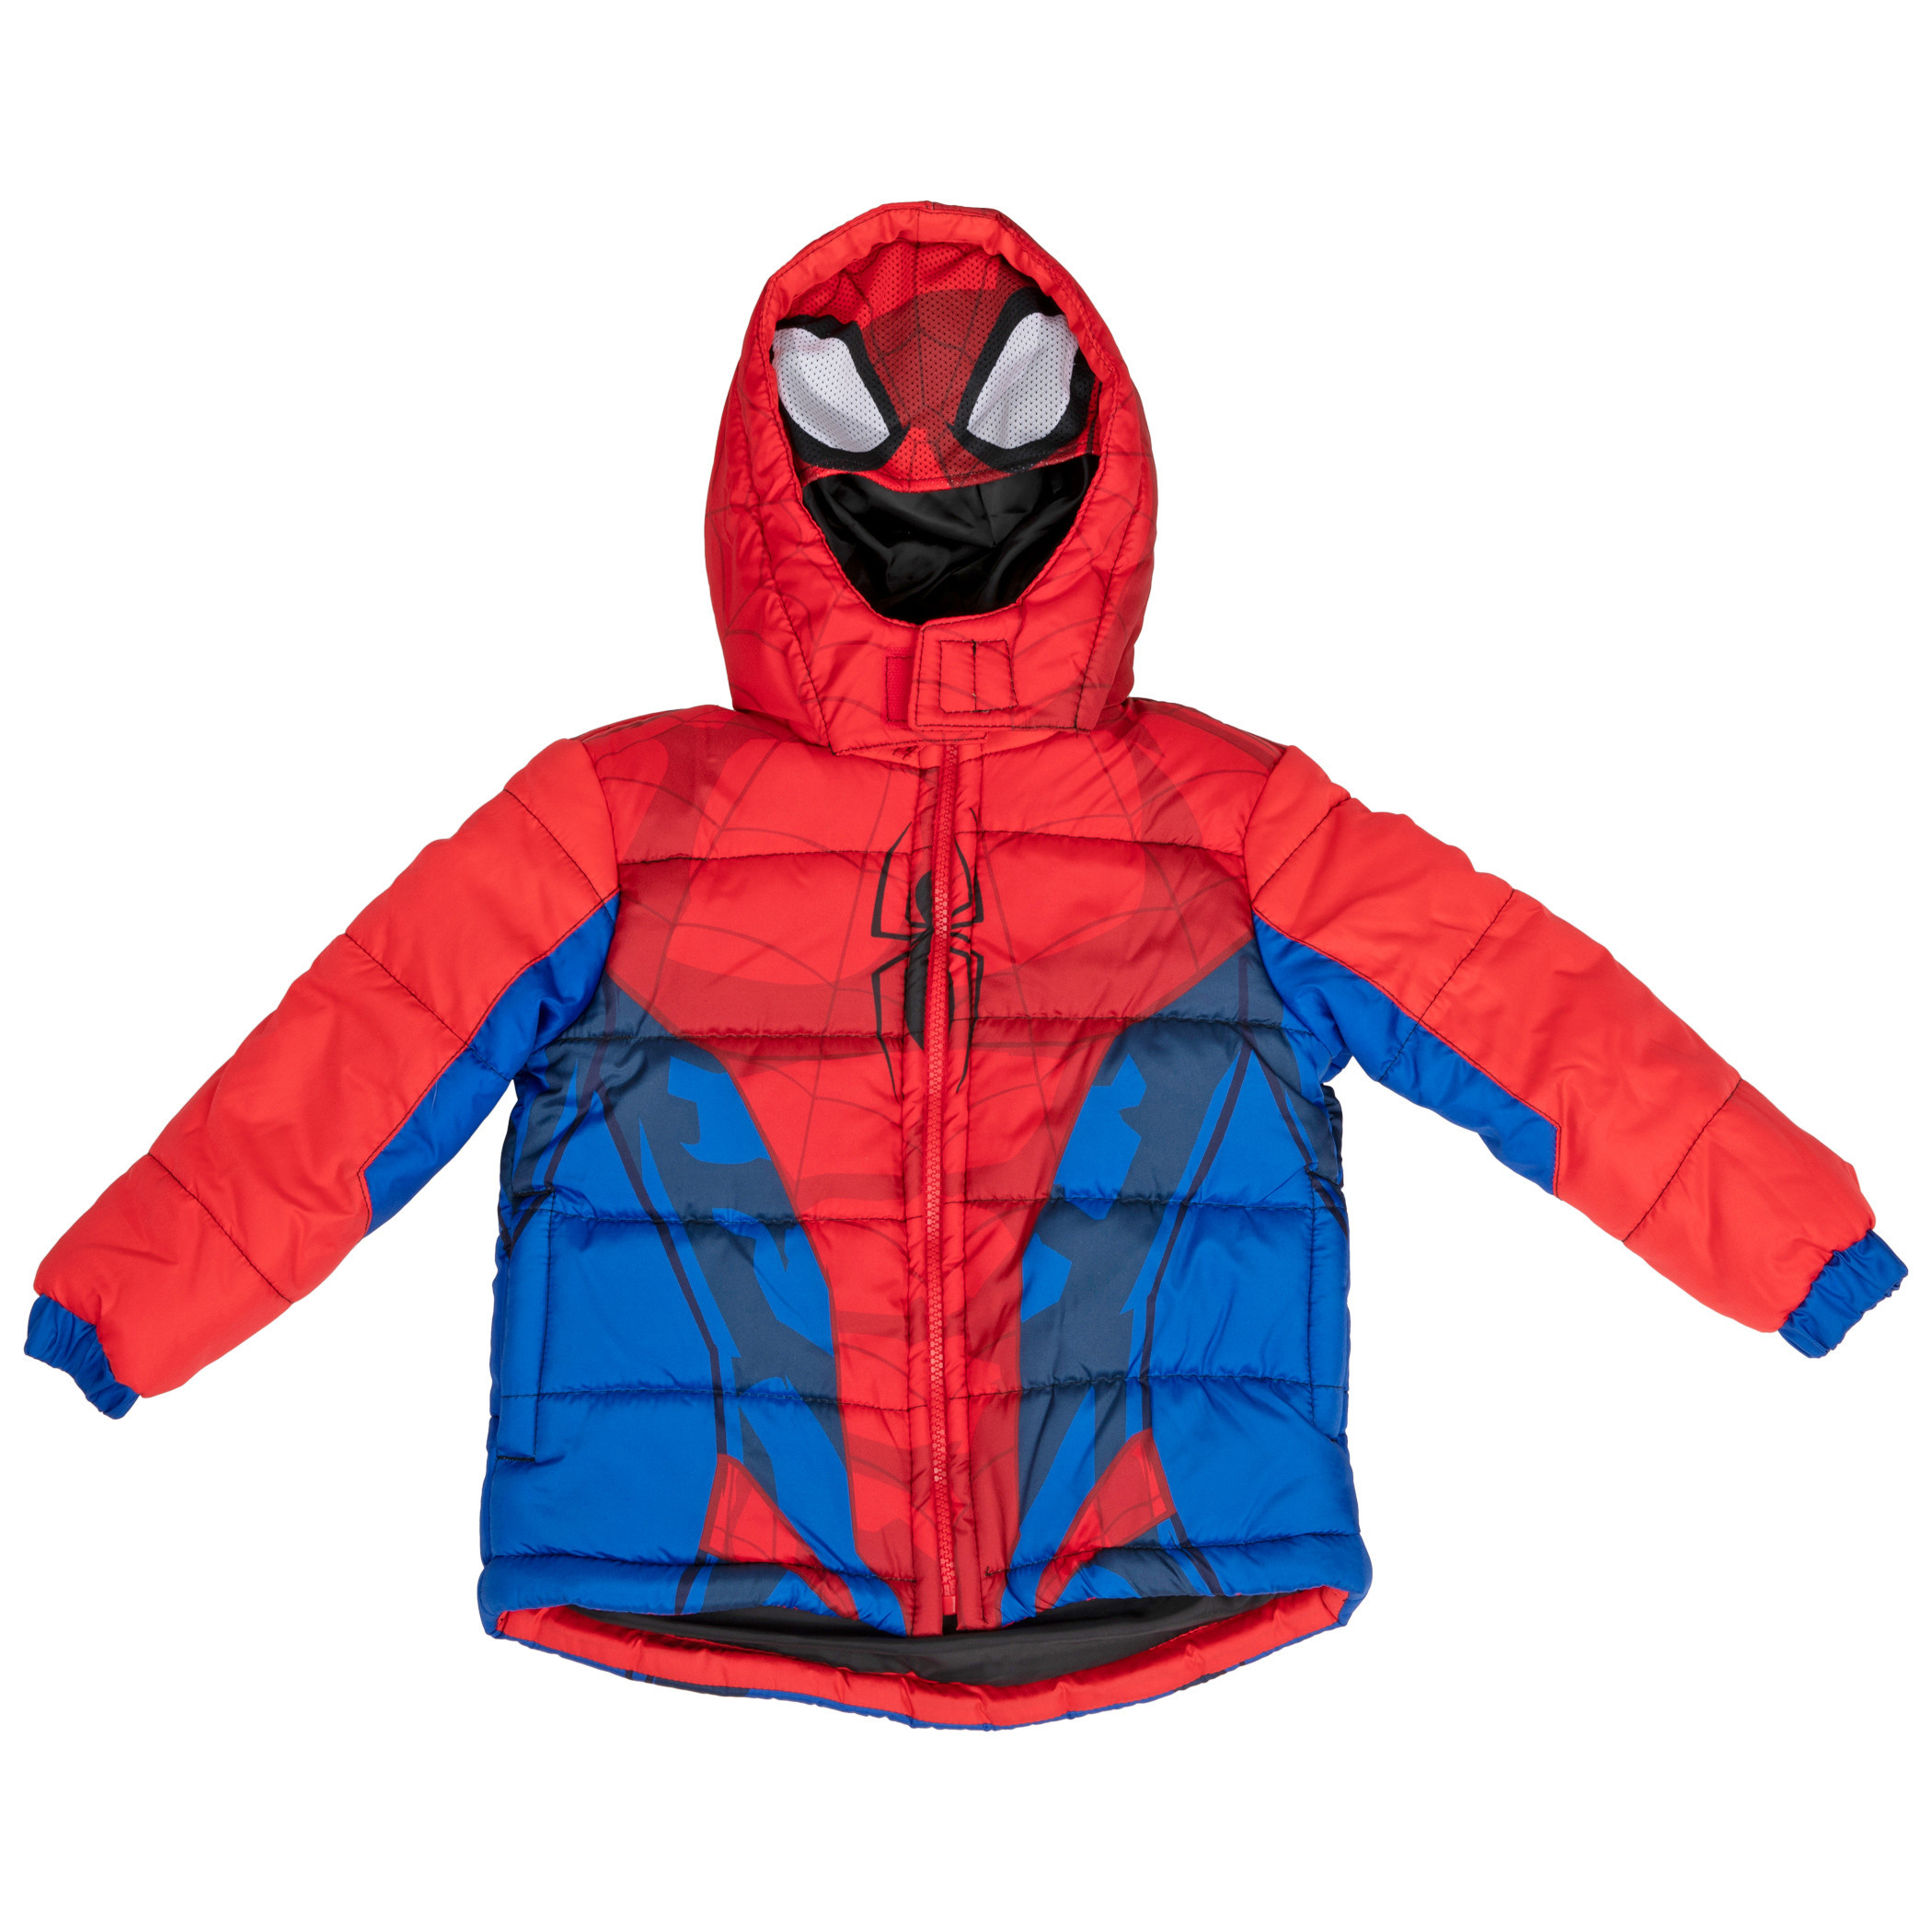 Spider-Man Costume Puffy Kids Jacket